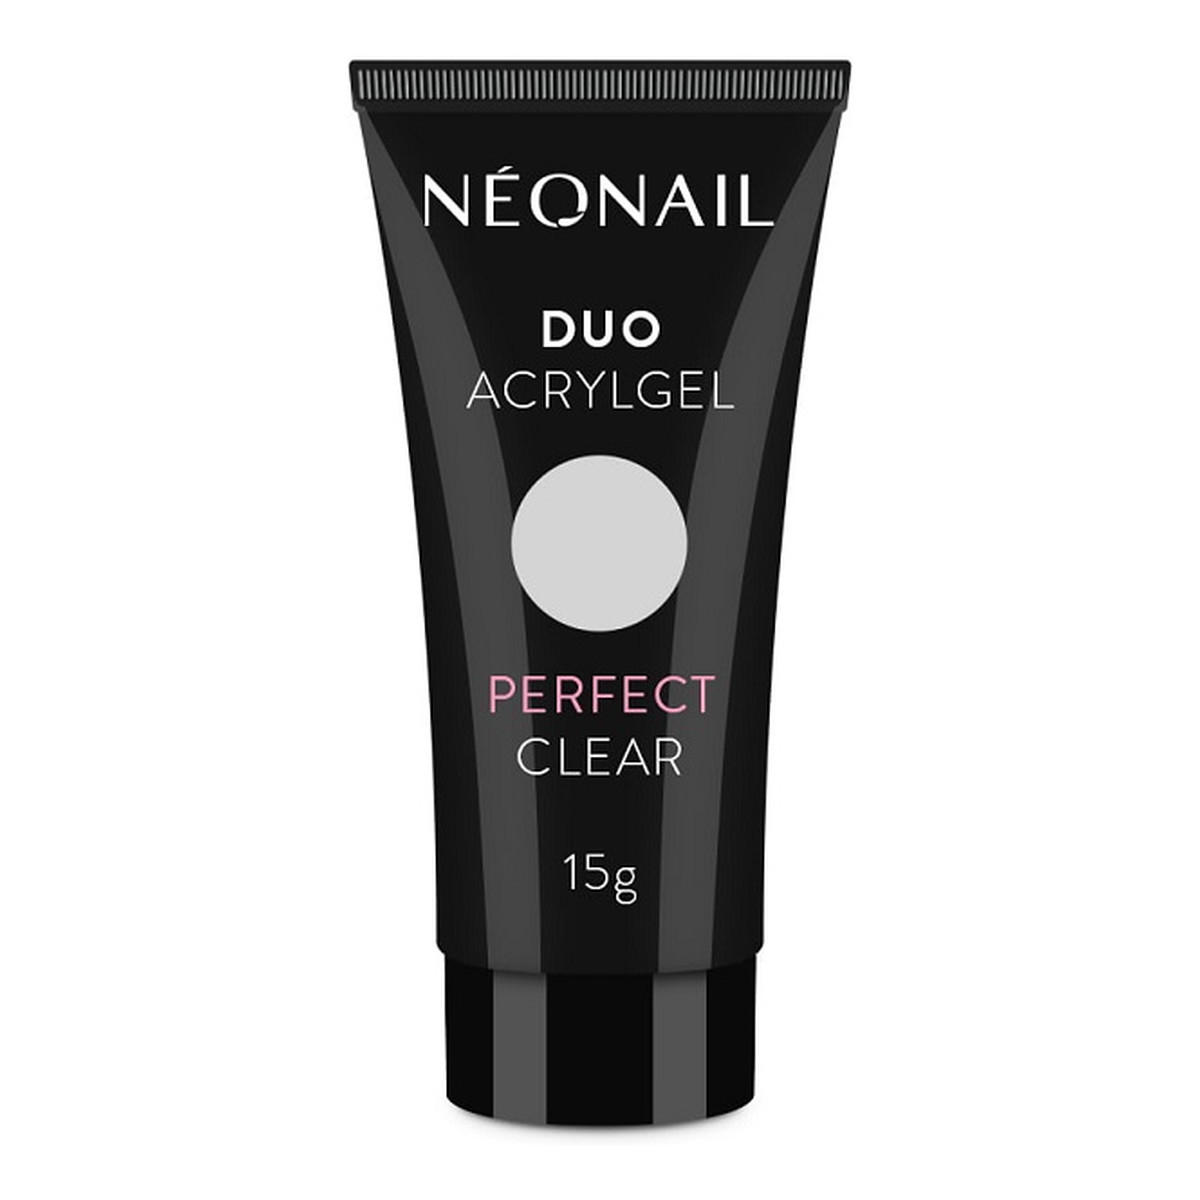 NeoNail Duo Acrylgel Akrylożel do paznokci 15g